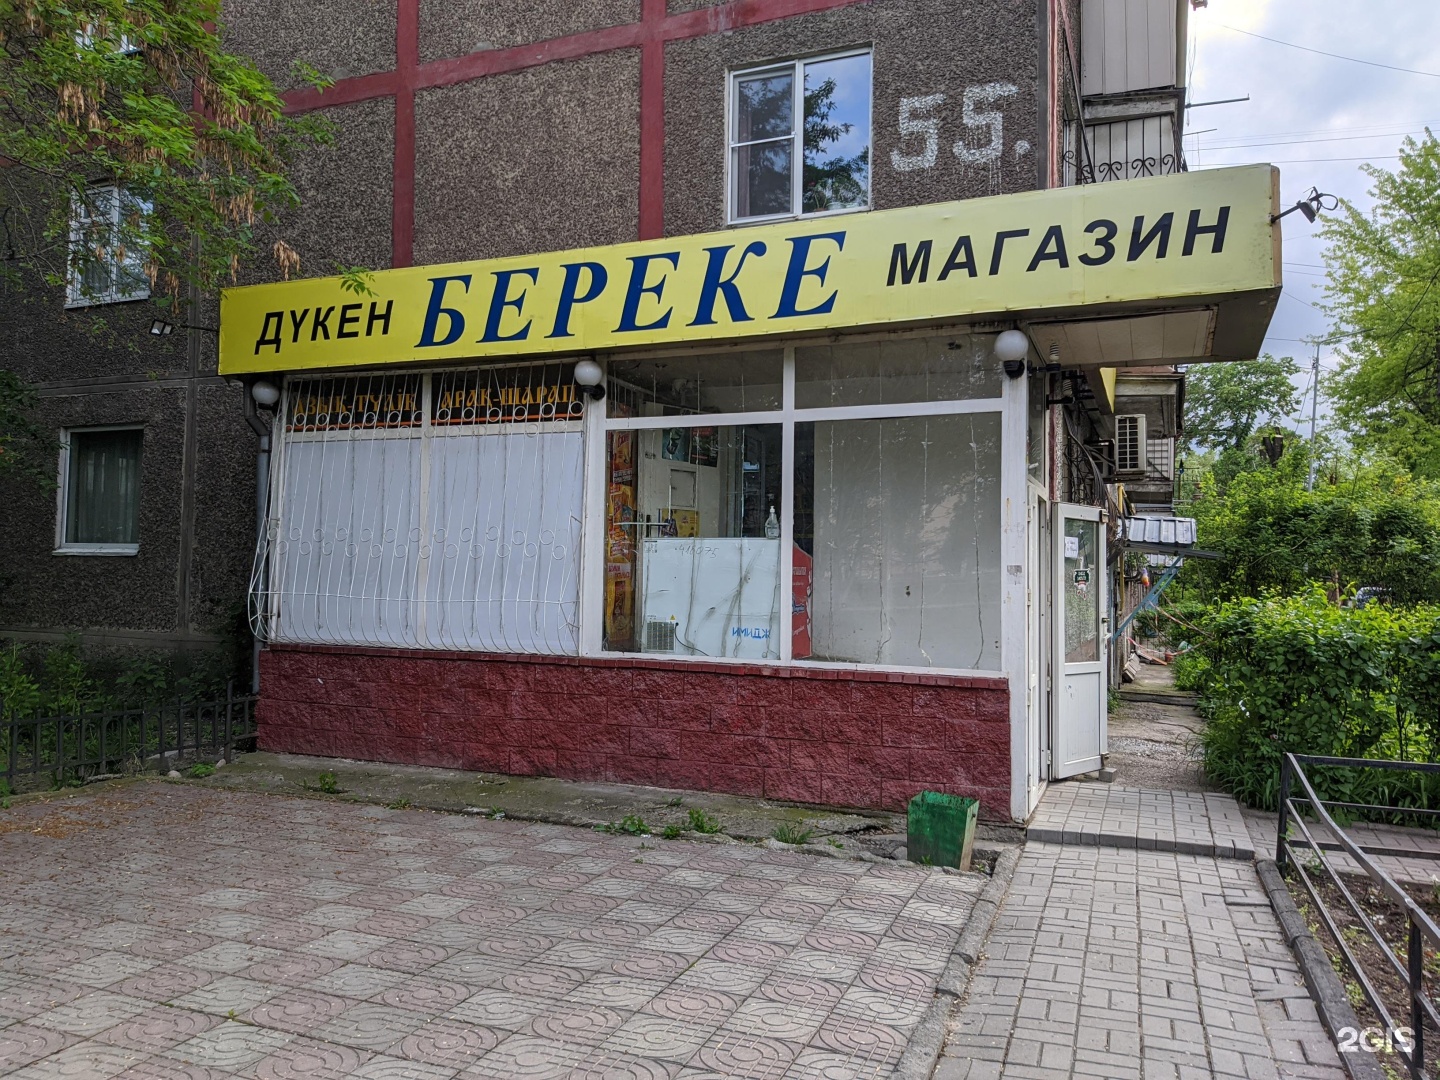 Сайт банка береке казахстан. Береке магазин. Продуктовый магазин Береке. Магазин Береке Алматы.